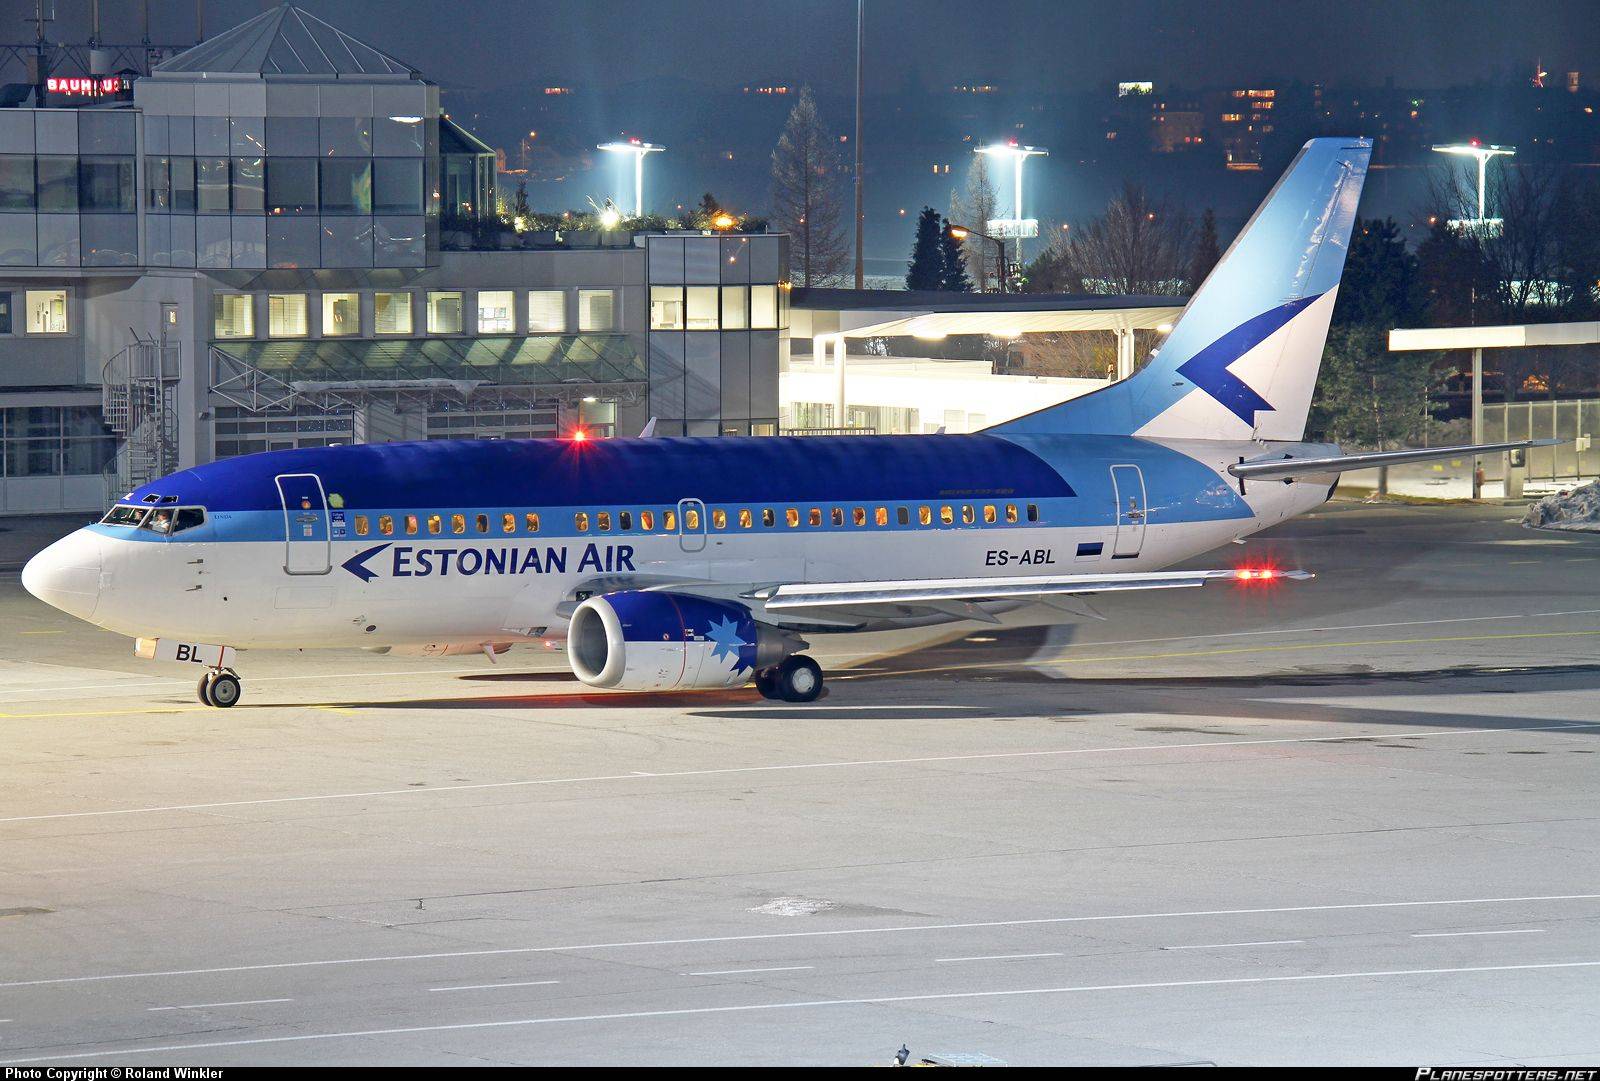 Эстонская авиакомпания «estonian air» для бюджетных и комфортных перелетов